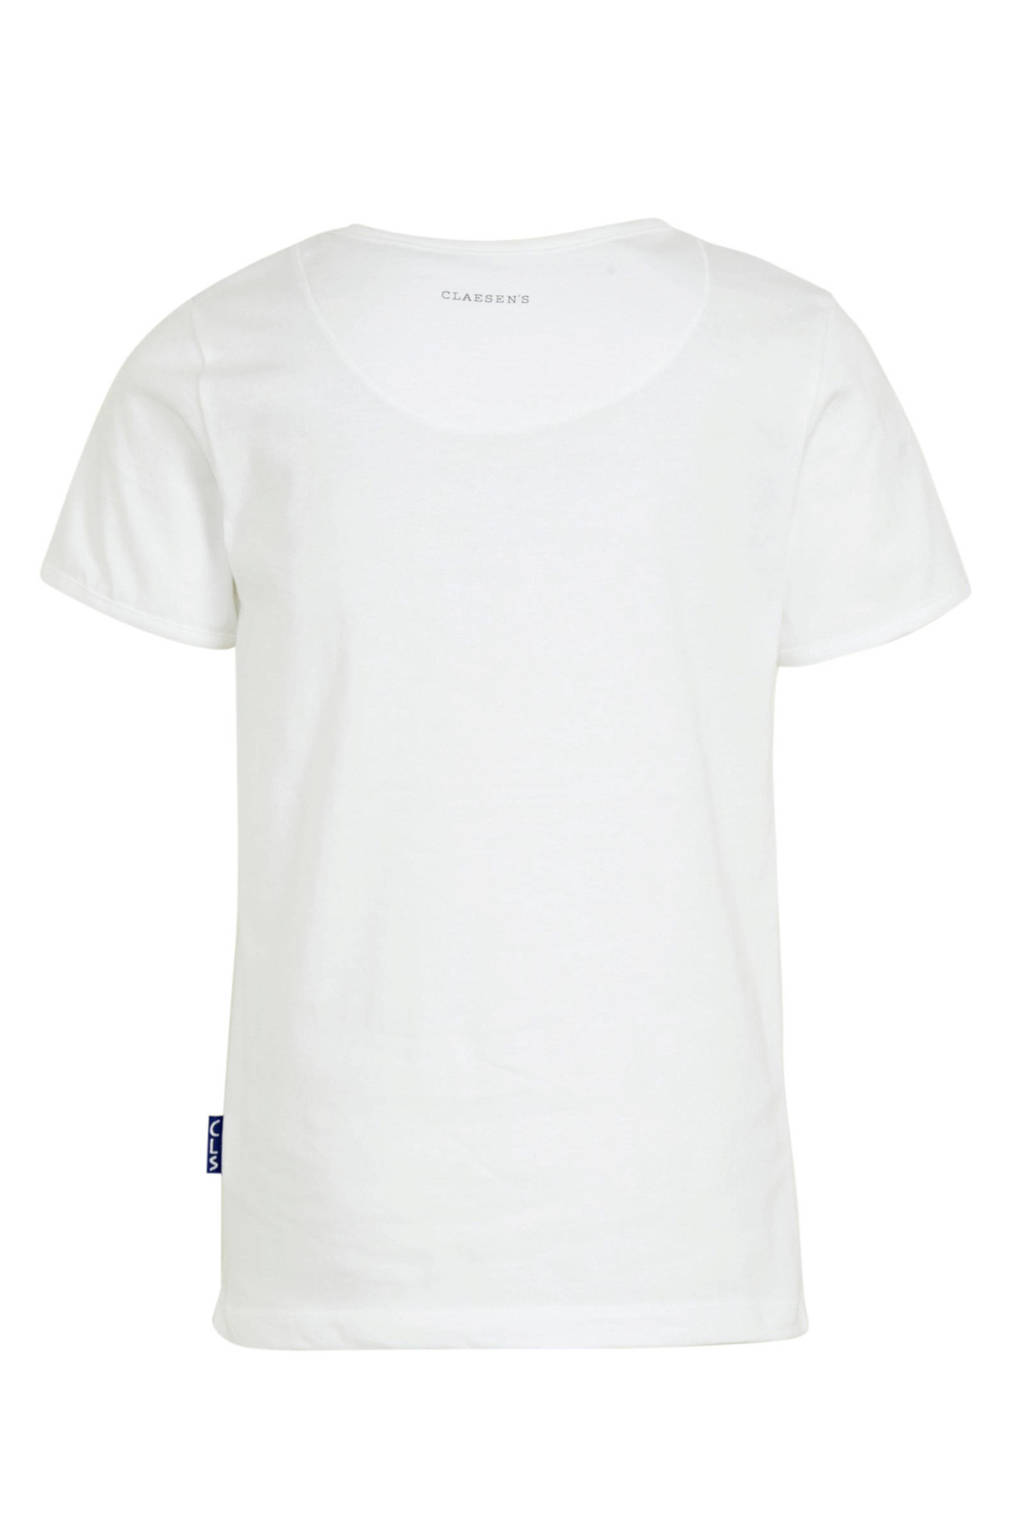 Goed opgeleid importeren Rechtzetten Claesen's T-shirt - set van 2 wit | wehkamp